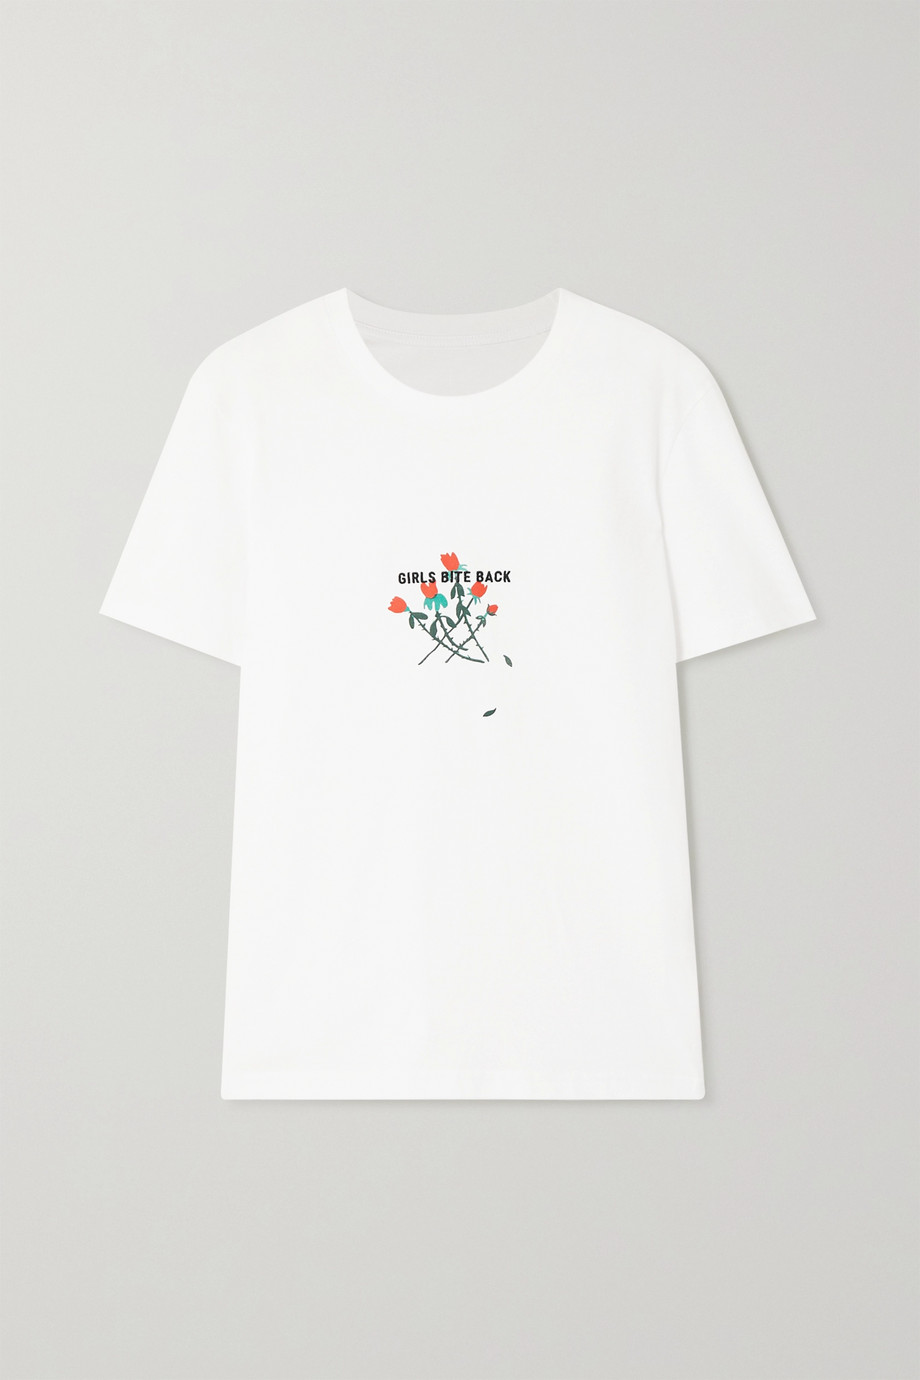 Net-a-Porter x Bernadette International Women's Day T-shirt 2020.